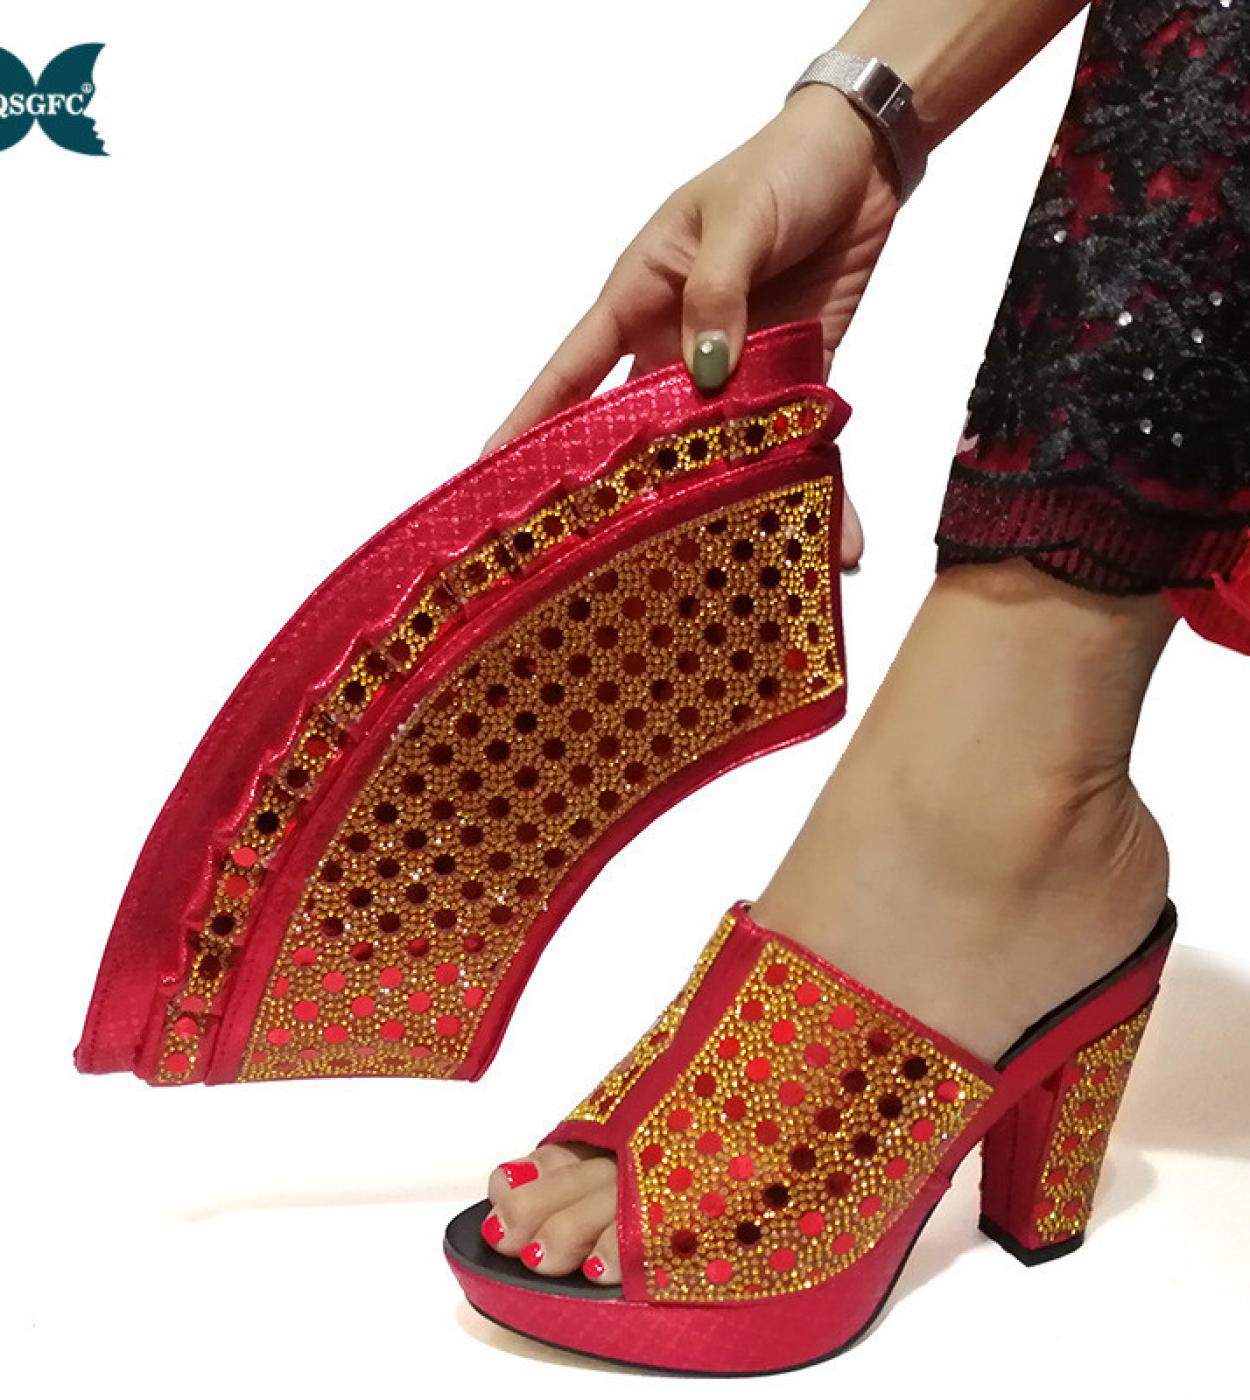 סט התאמת נעליים ותיקים אפריקאיות עם נשים נמכרות חמות נעלי עיצוב איטלקי וסט תיקים למסיבה חתונה צבע אדום